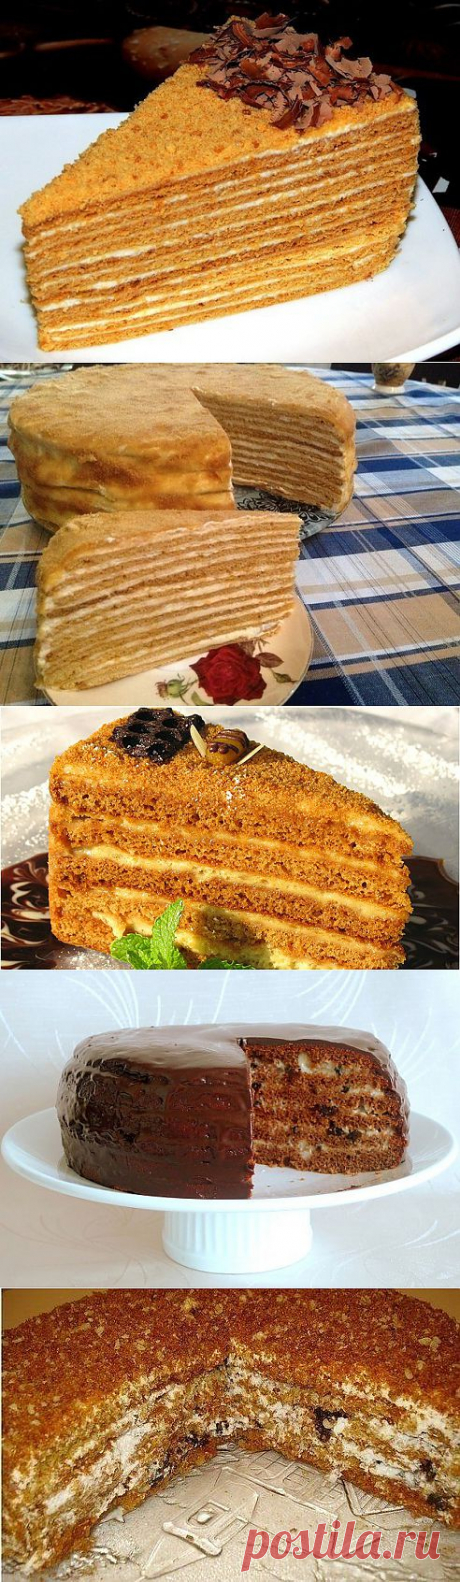 Торт медовик рецепты.